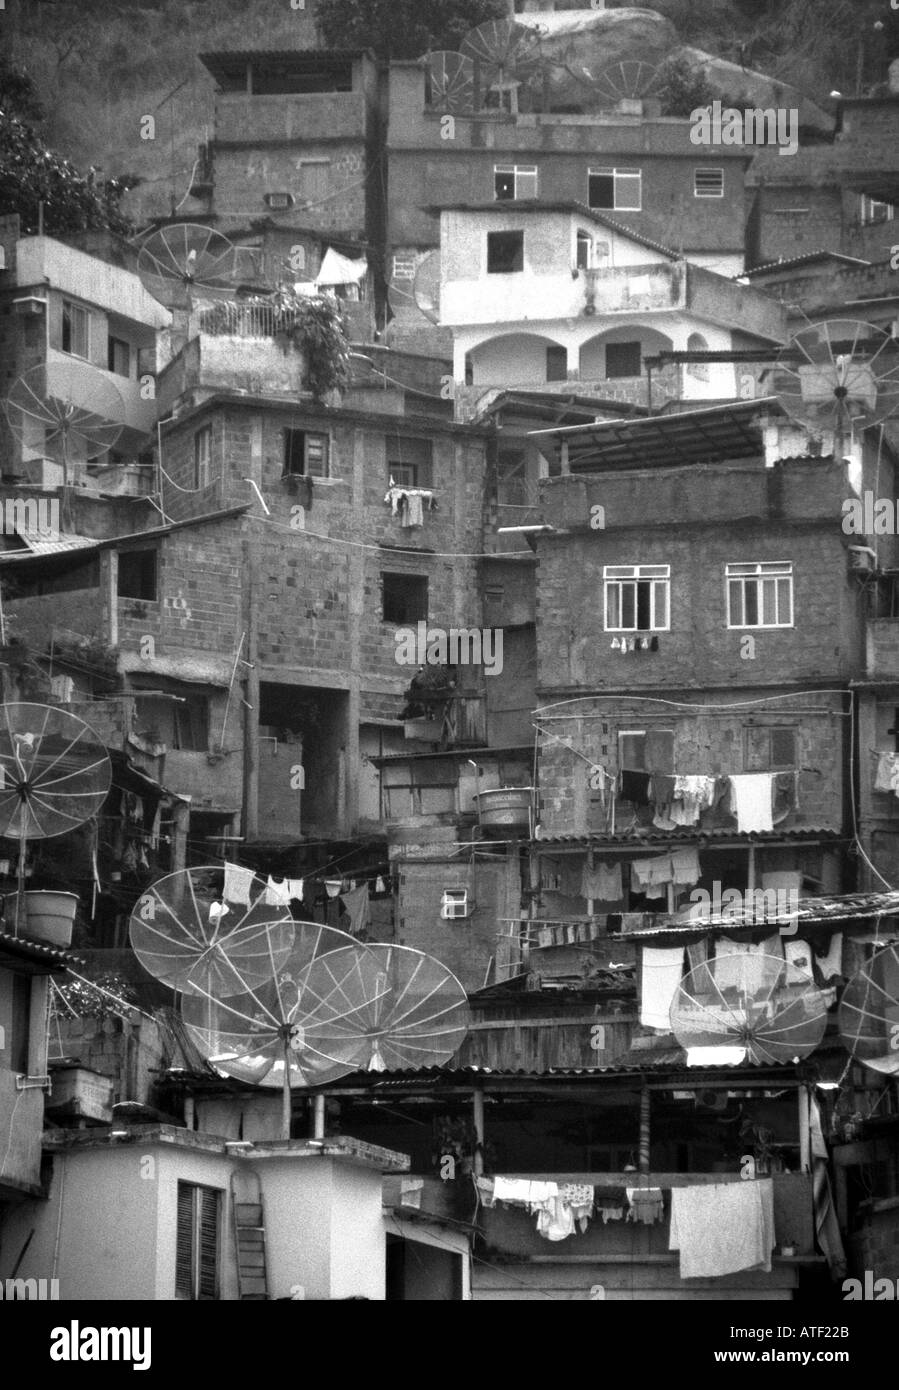 Panorama Wohnstätten gebaut Top gegenseitig großen Fernseher Parabolantenne S. Marta Rio de Janeiro Brasilien Brasil Süden Lateinamerikas Stockfoto